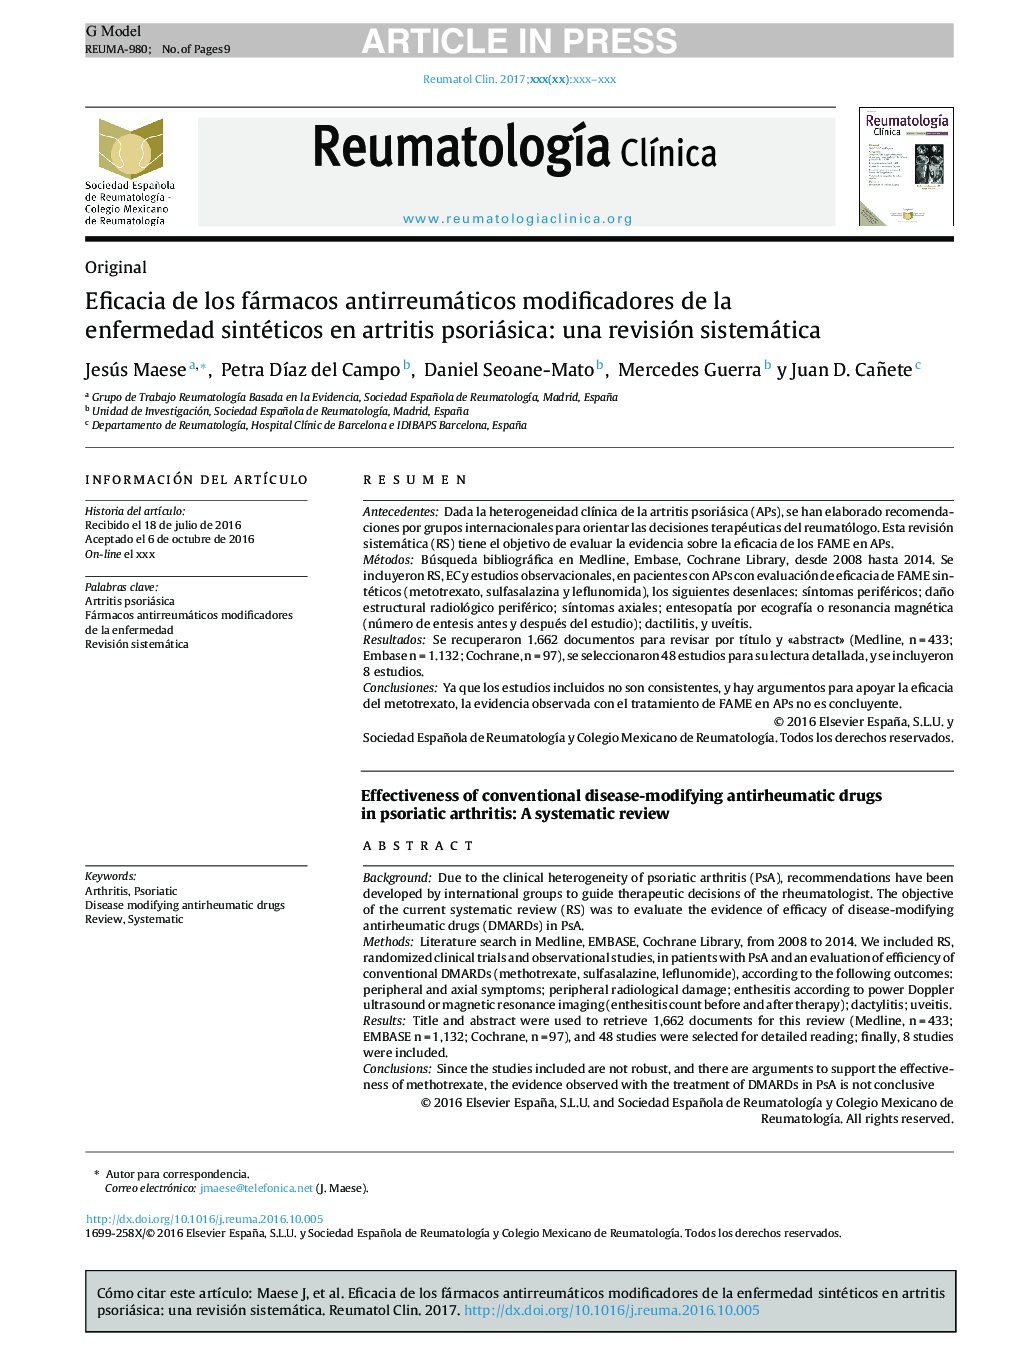 Eficacia de los fármacos antirreumáticos modificadores de la enfermedad sintéticos en artritis psoriásica: una revisión sistemática